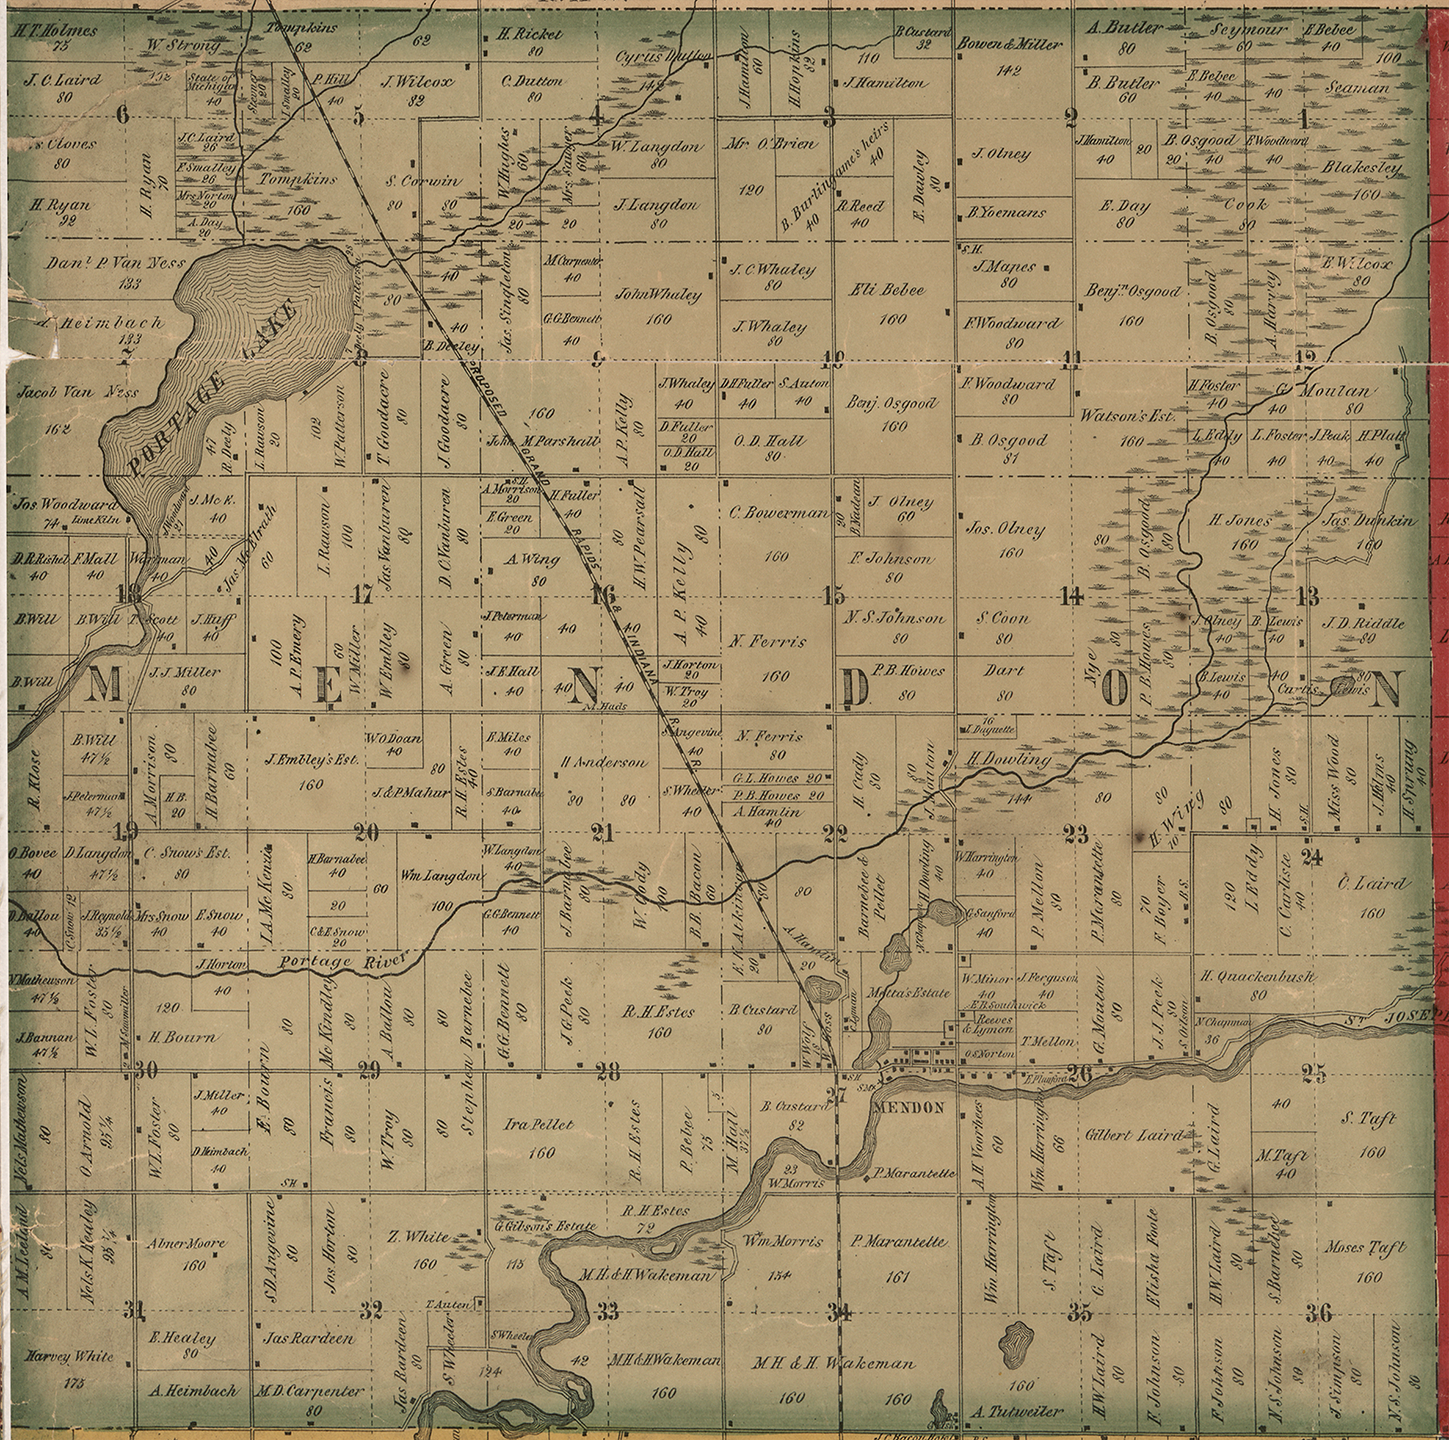 1858 Mendon Township Michigan landownership map